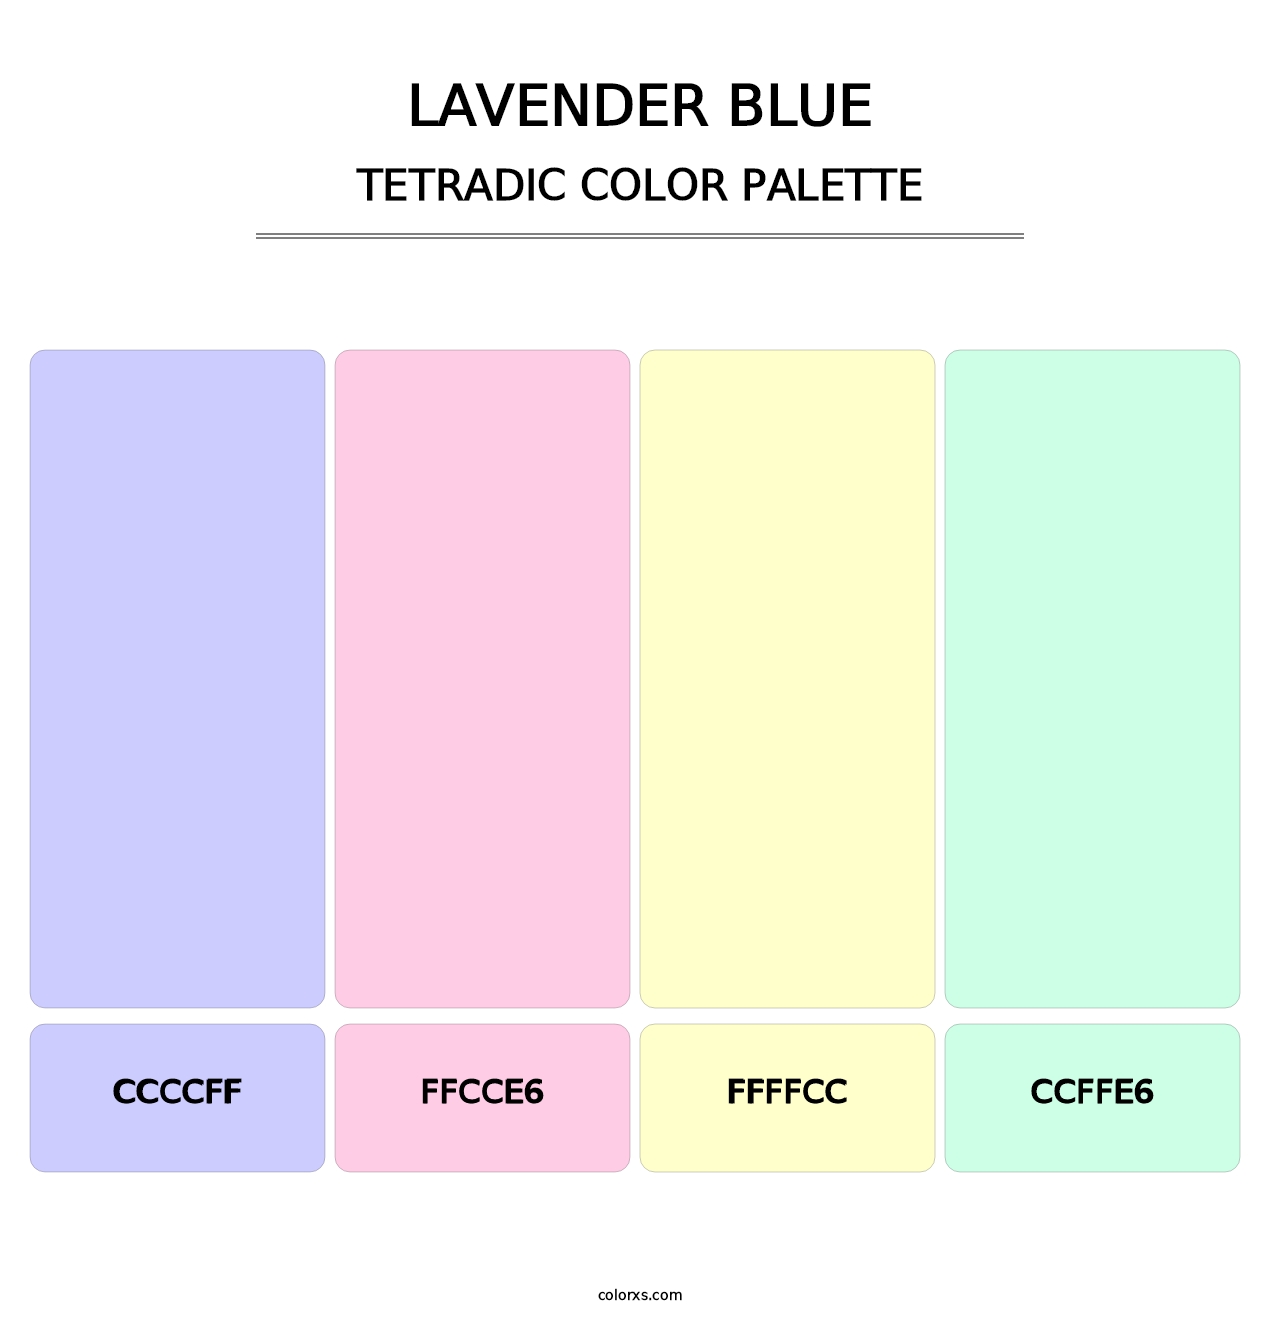 Lavender Blue - Tetradic Color Palette